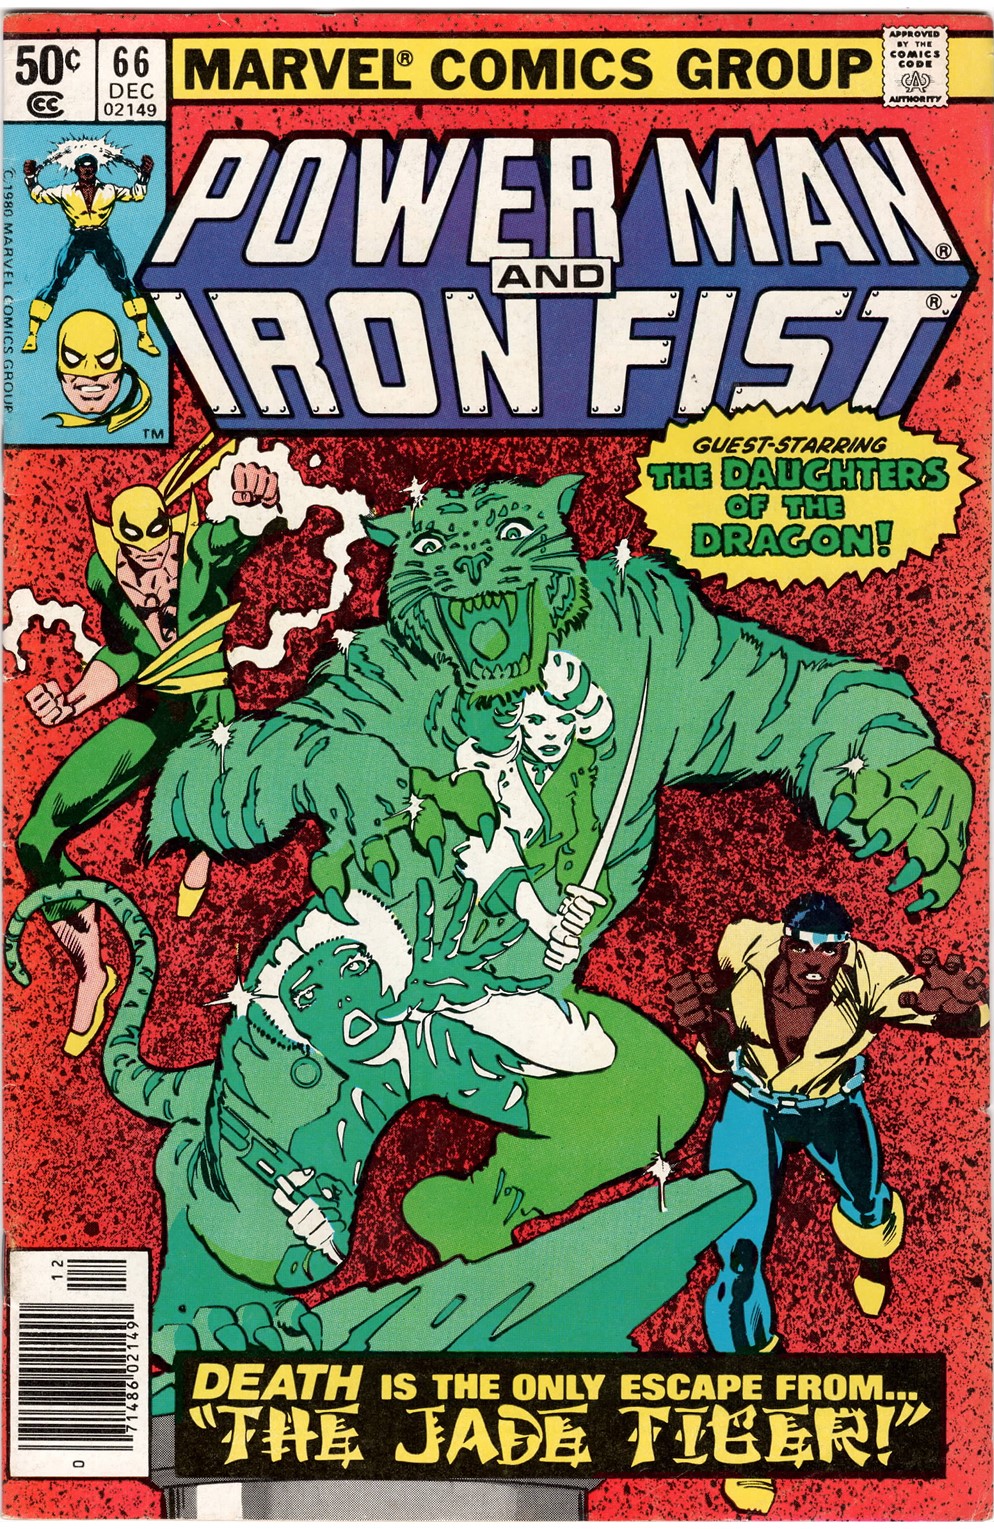 Power Man & Iron Fist #66 Newsstand Variant